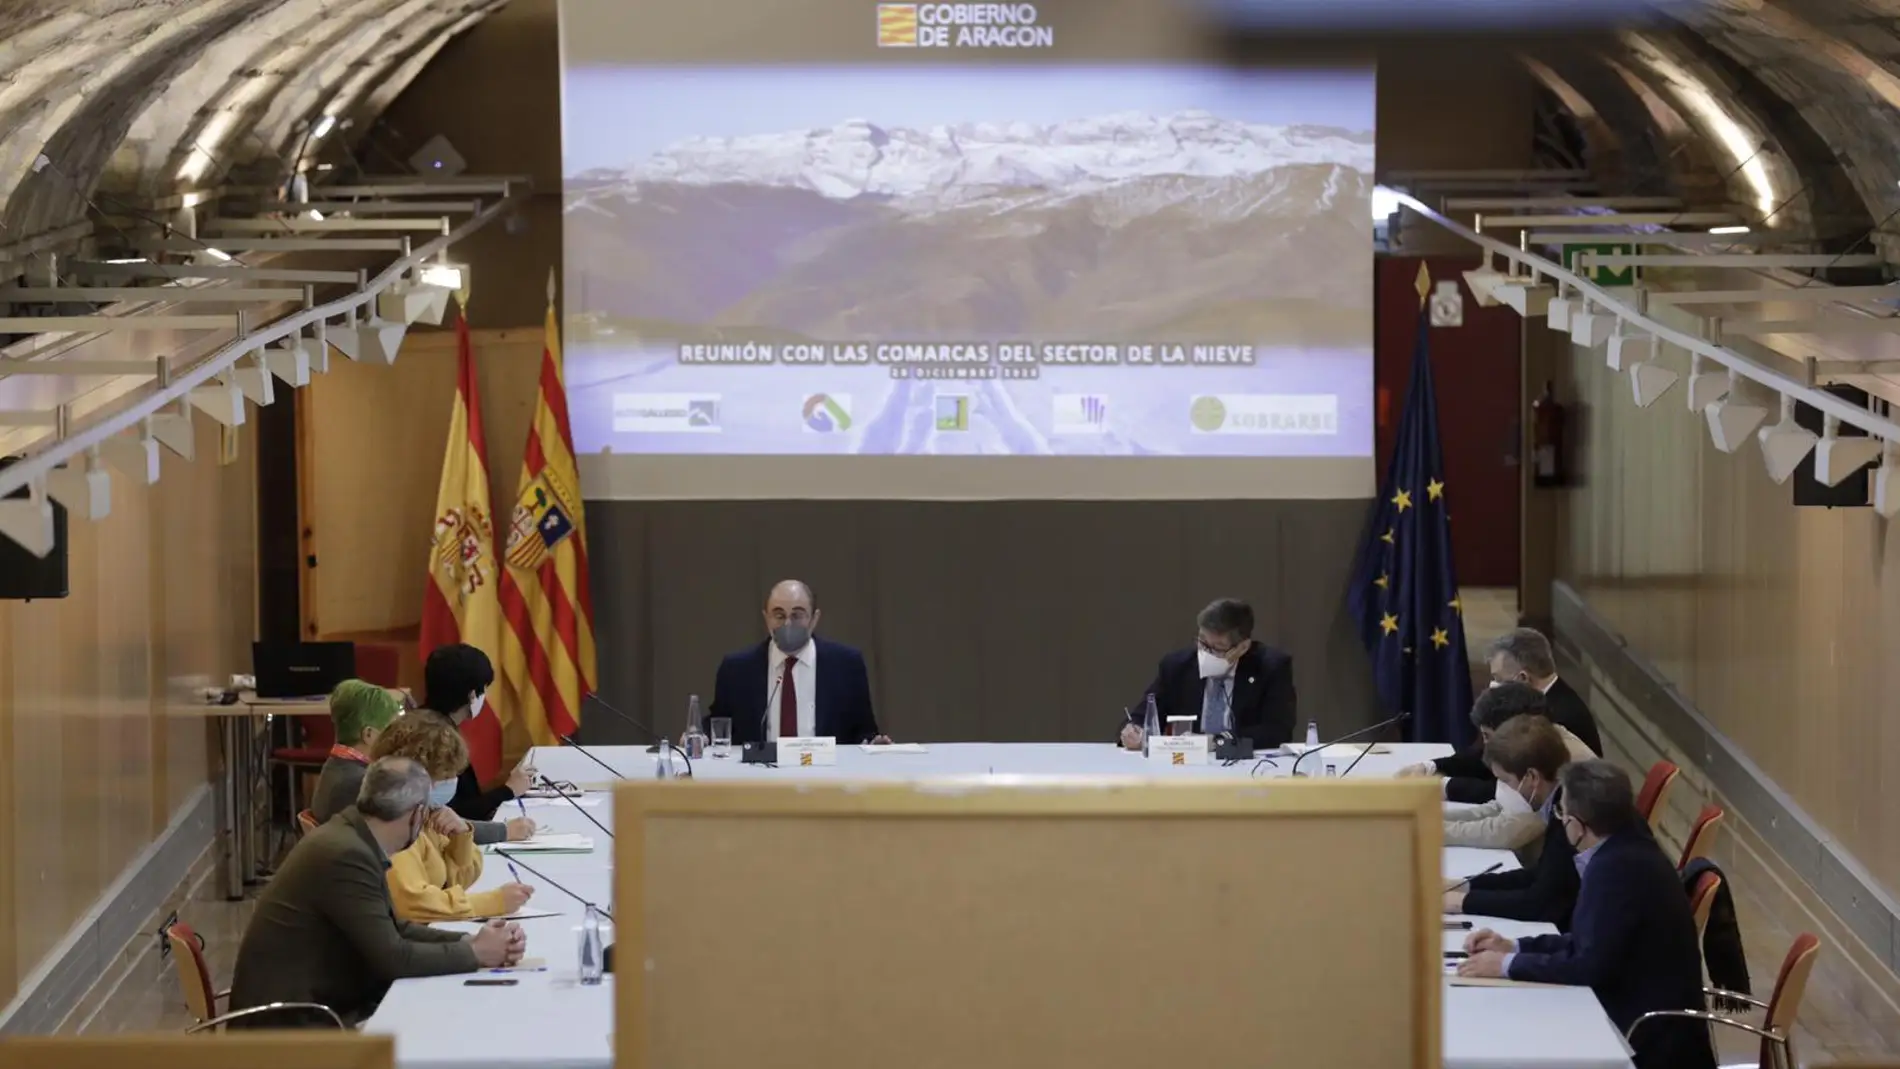 Reunión del Gobierno de Aragón con representantes de las comarcas ligadas al turismo de la nieve